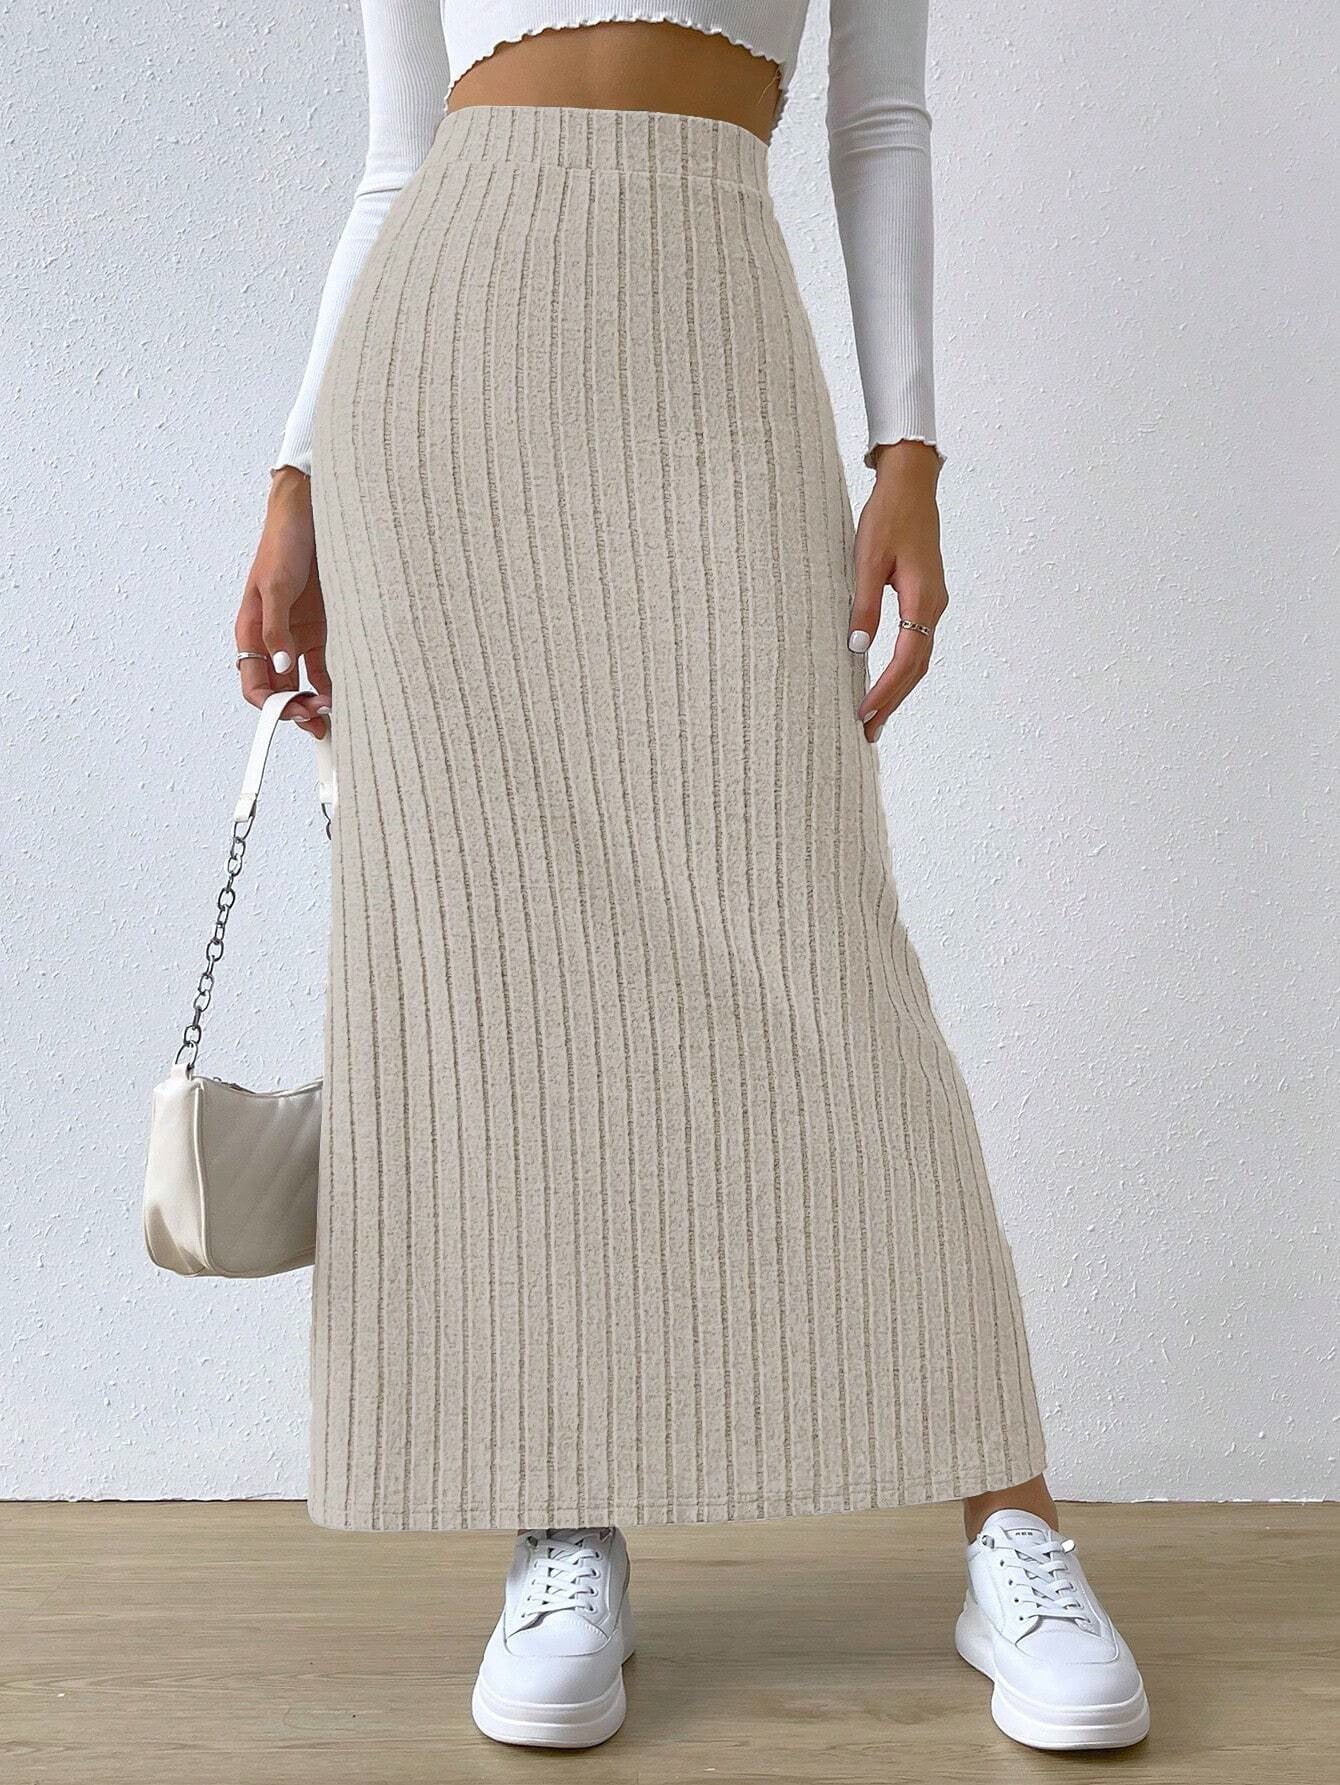 Women's Spring Long Skirt High Waist Side Slit Slim Fit Knitted Skirt